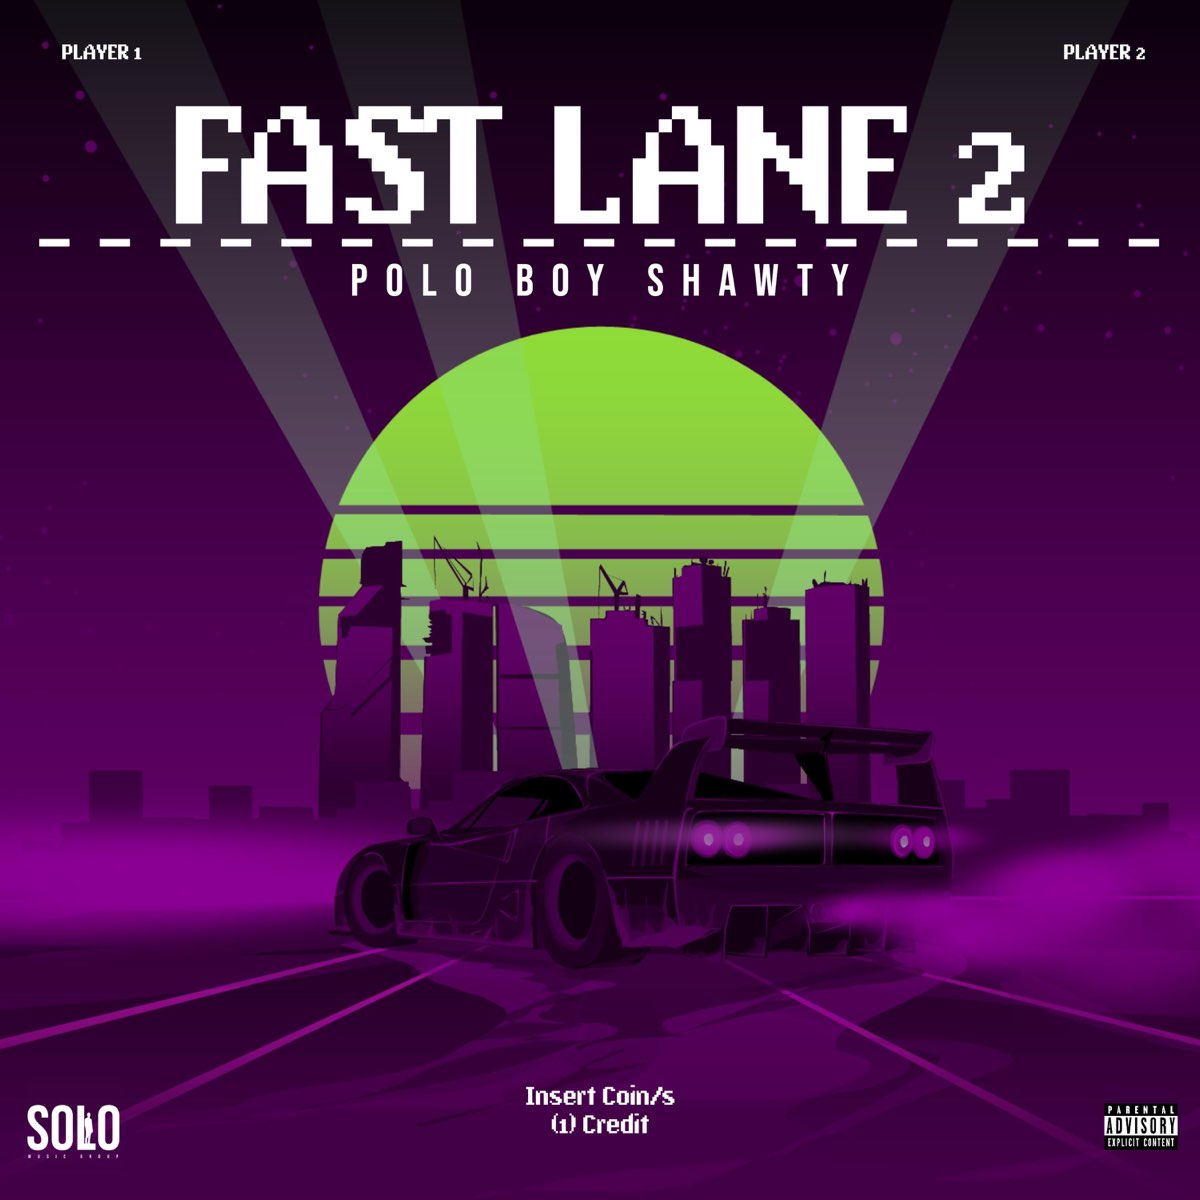 Fast lane 2